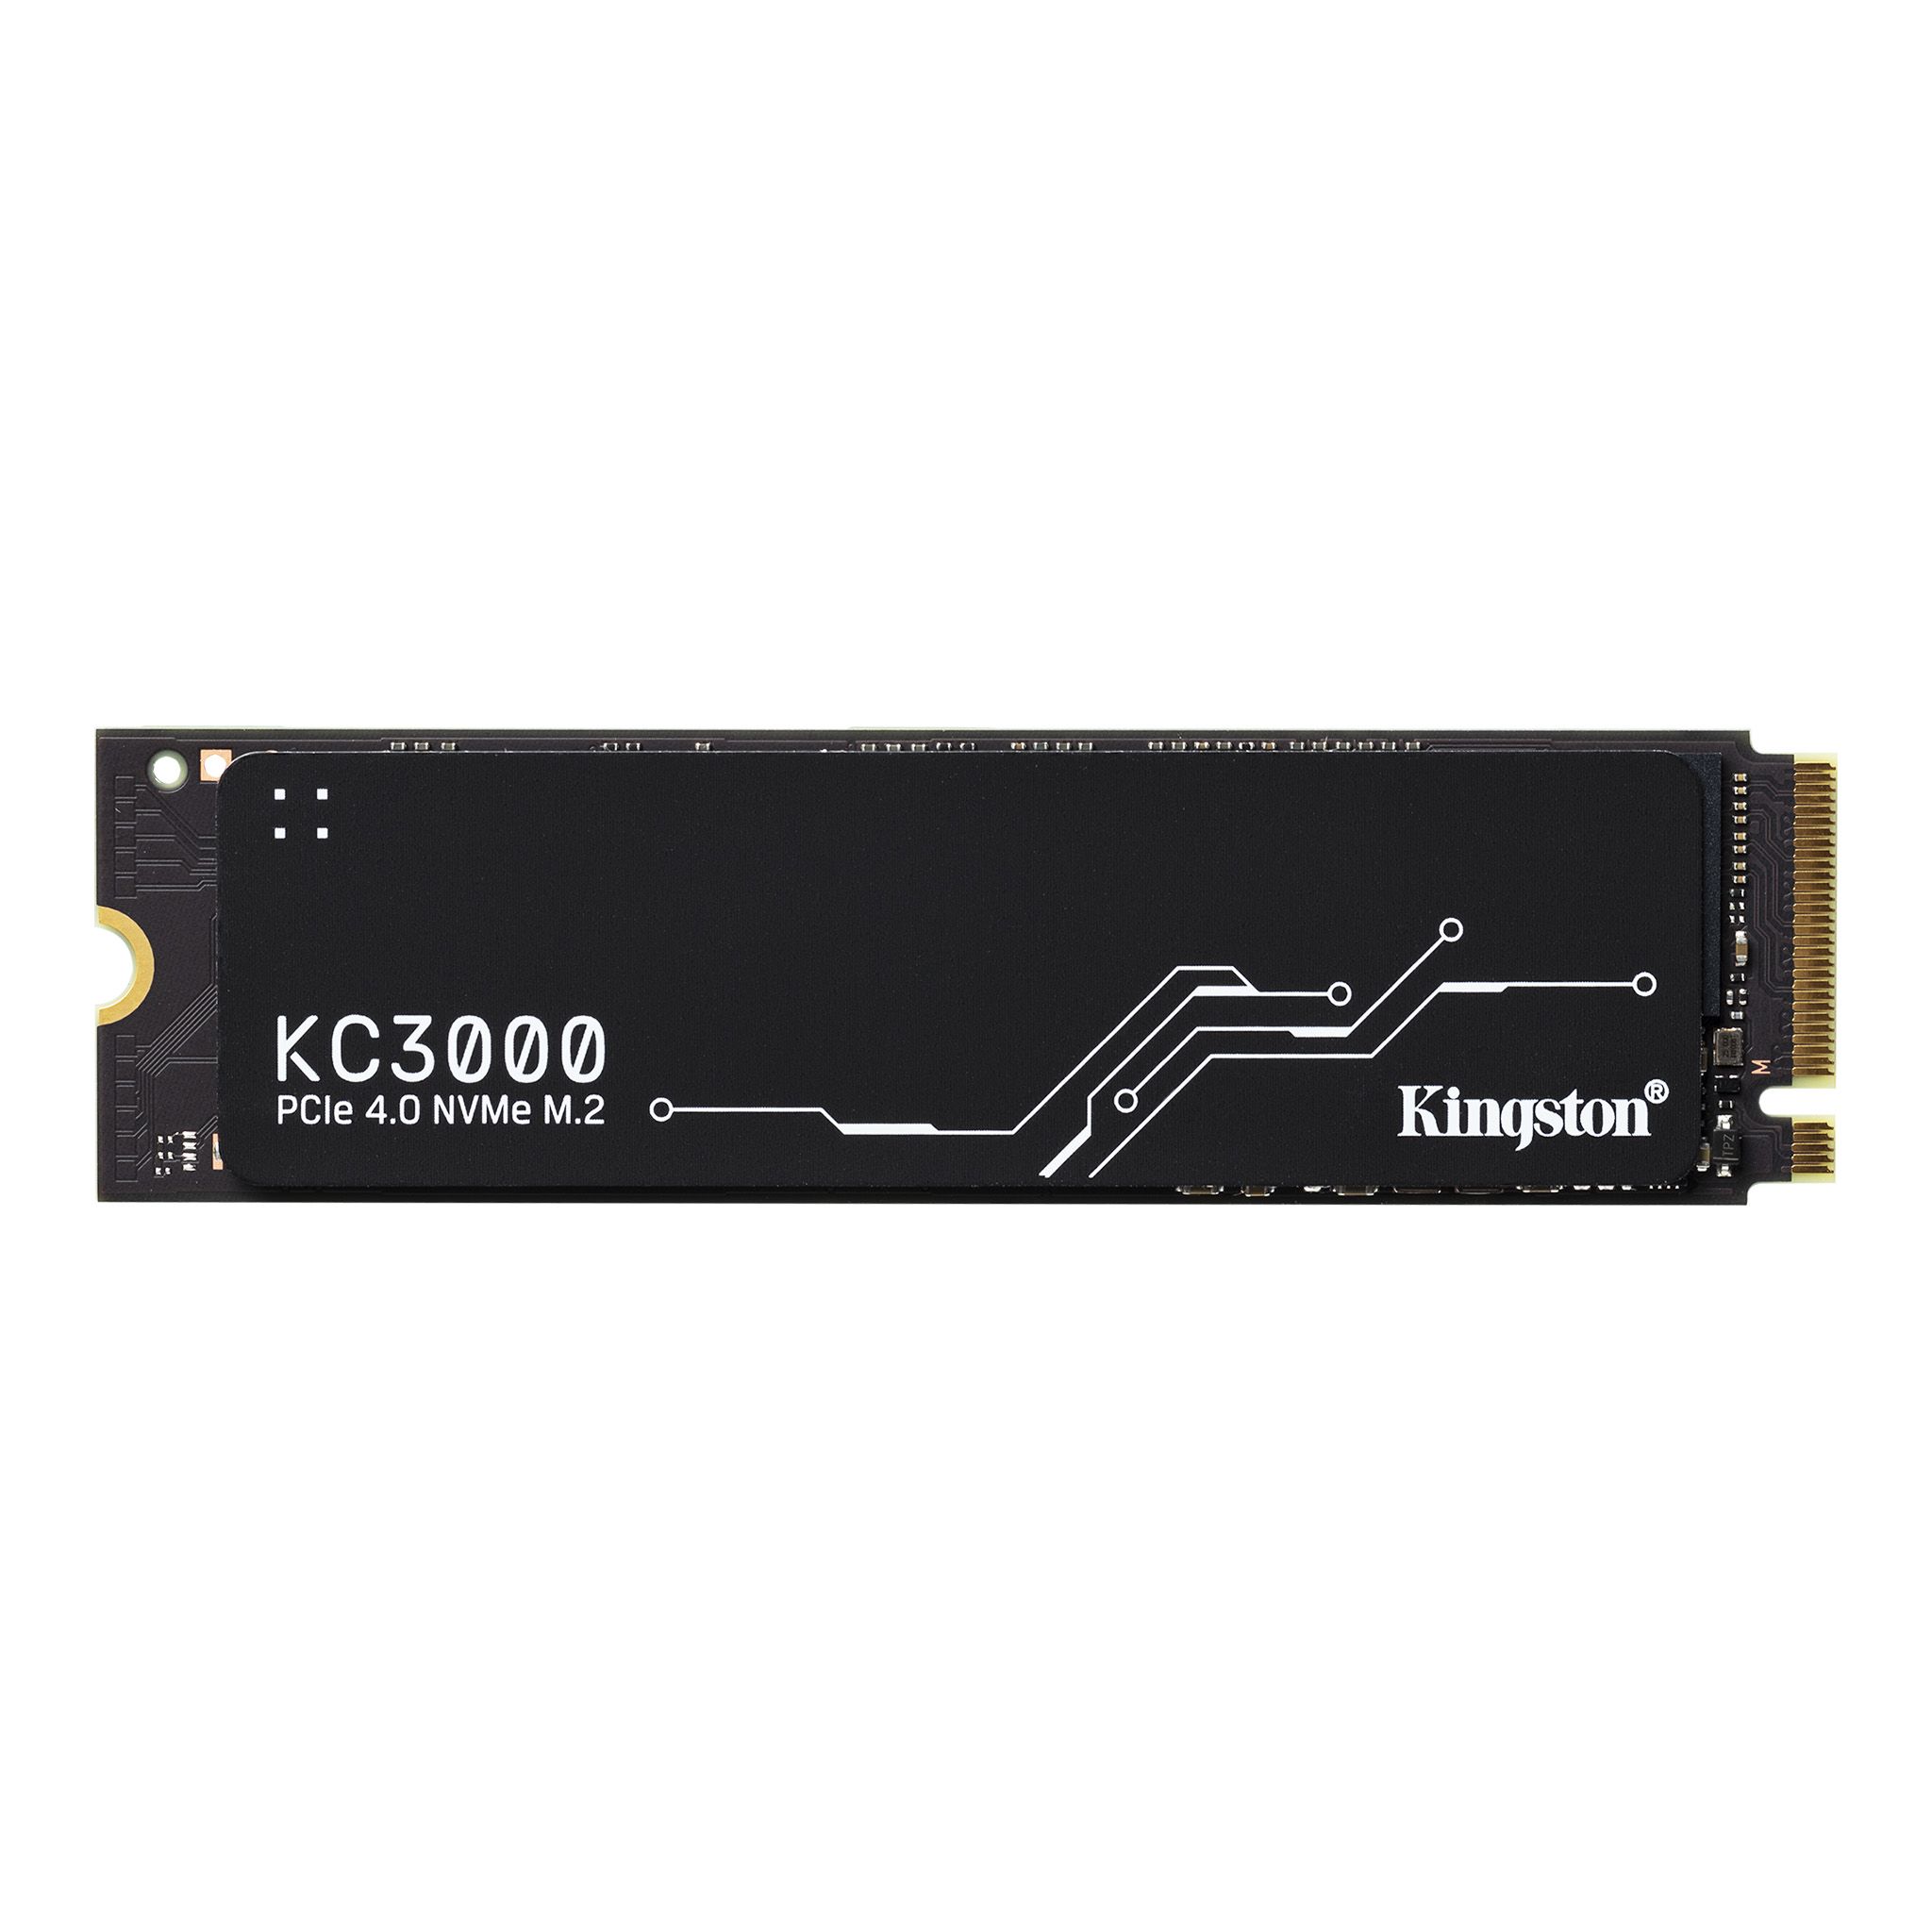 KINGSTON KC3000 2048GB PCIe 4.0 NVMe M.2 SSD - SKC3000D/2048G